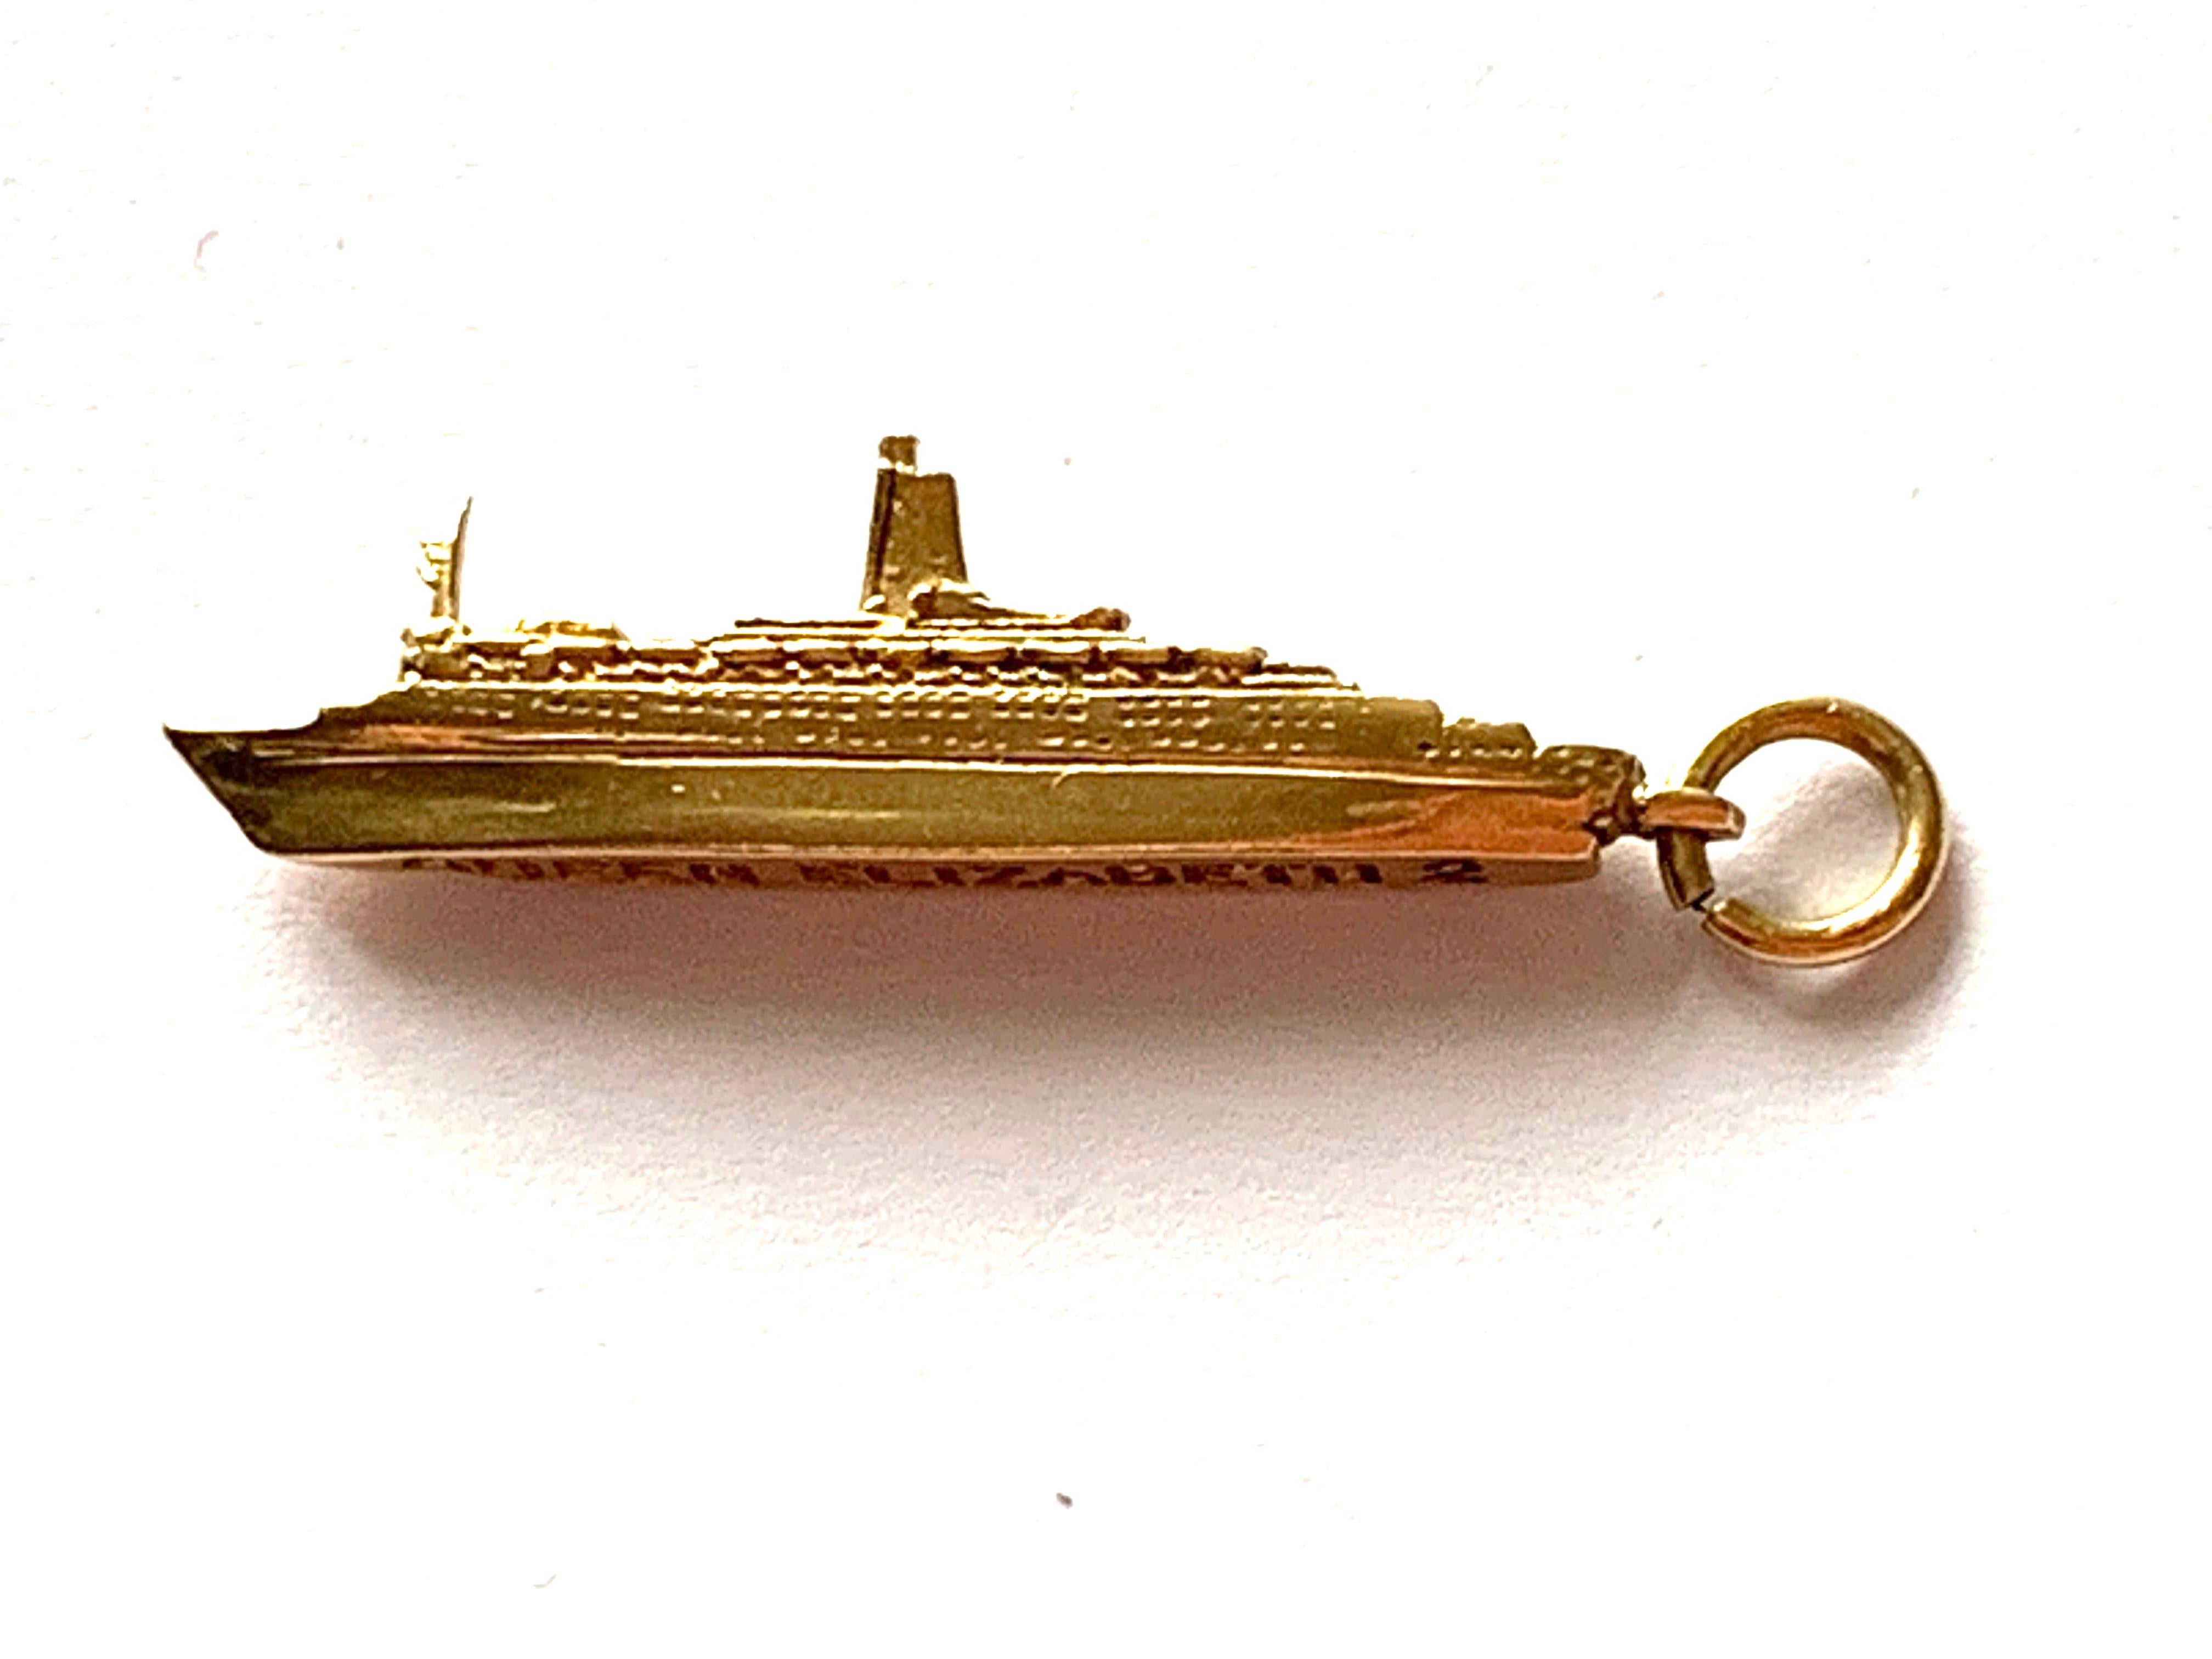 9ct Gold Königin Elizabeth 11 Schiff-Anhänger
Gepunzt  BAO (Birmingham Assay Offices)
Gewicht 2,6 Gramm
Länge 3,5 cm (einschl. Bügel)
Breite 6mm